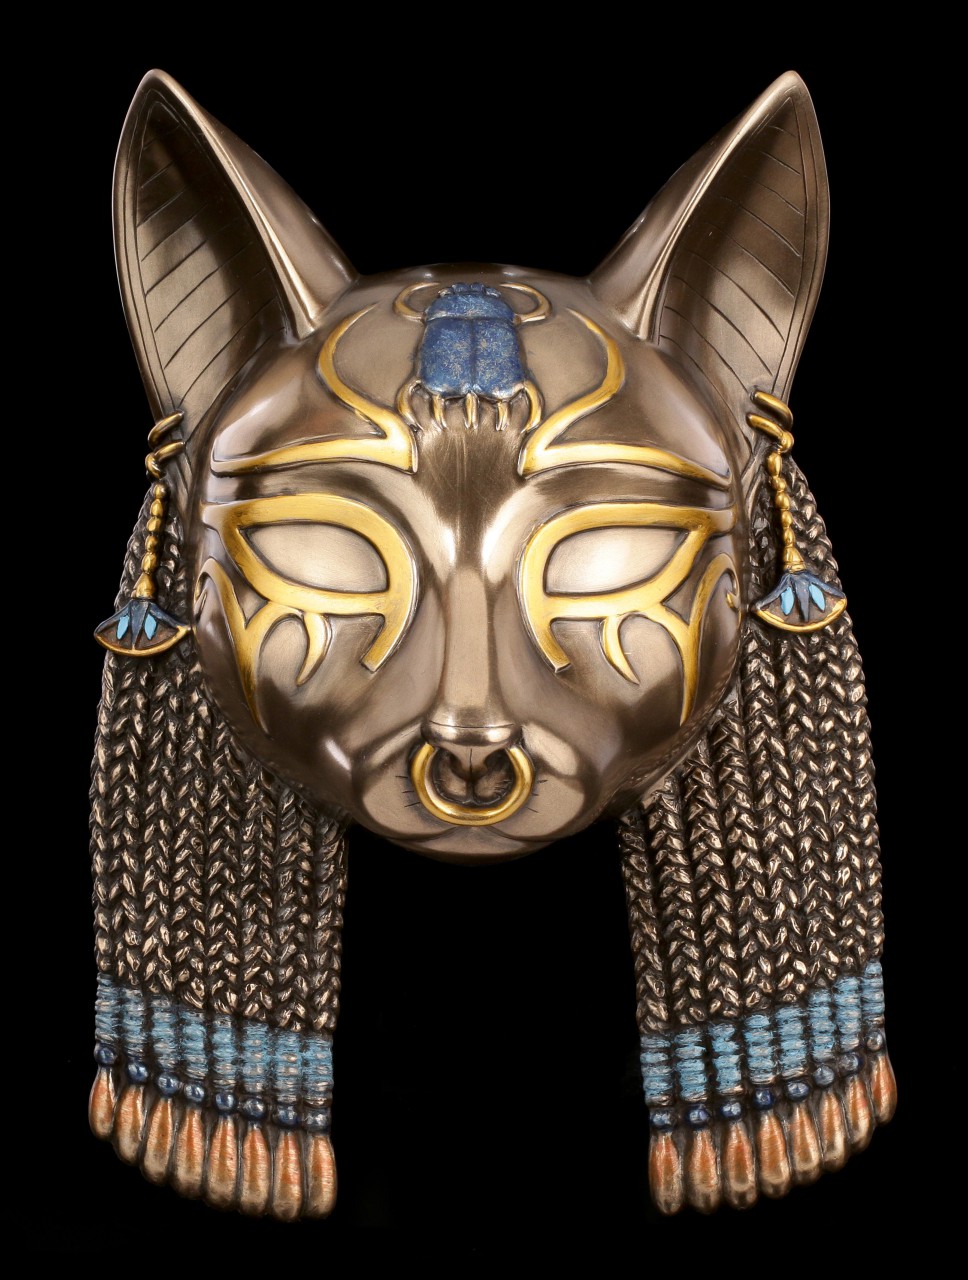 Bastet Maske - Altägyptische Göttin der Fruchtbarkeit